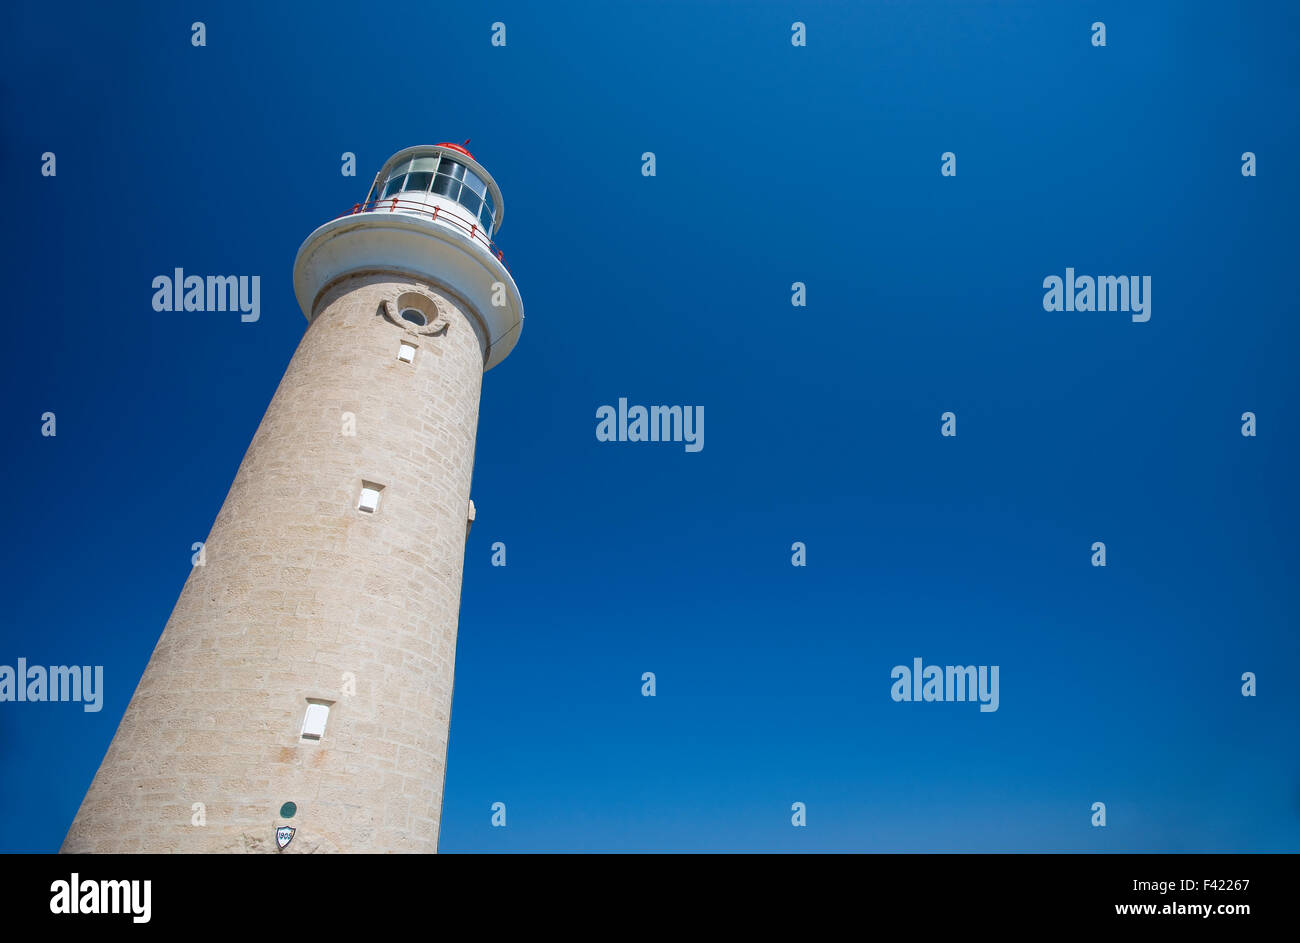 Lighthouse against clear blue sky Stock Photo